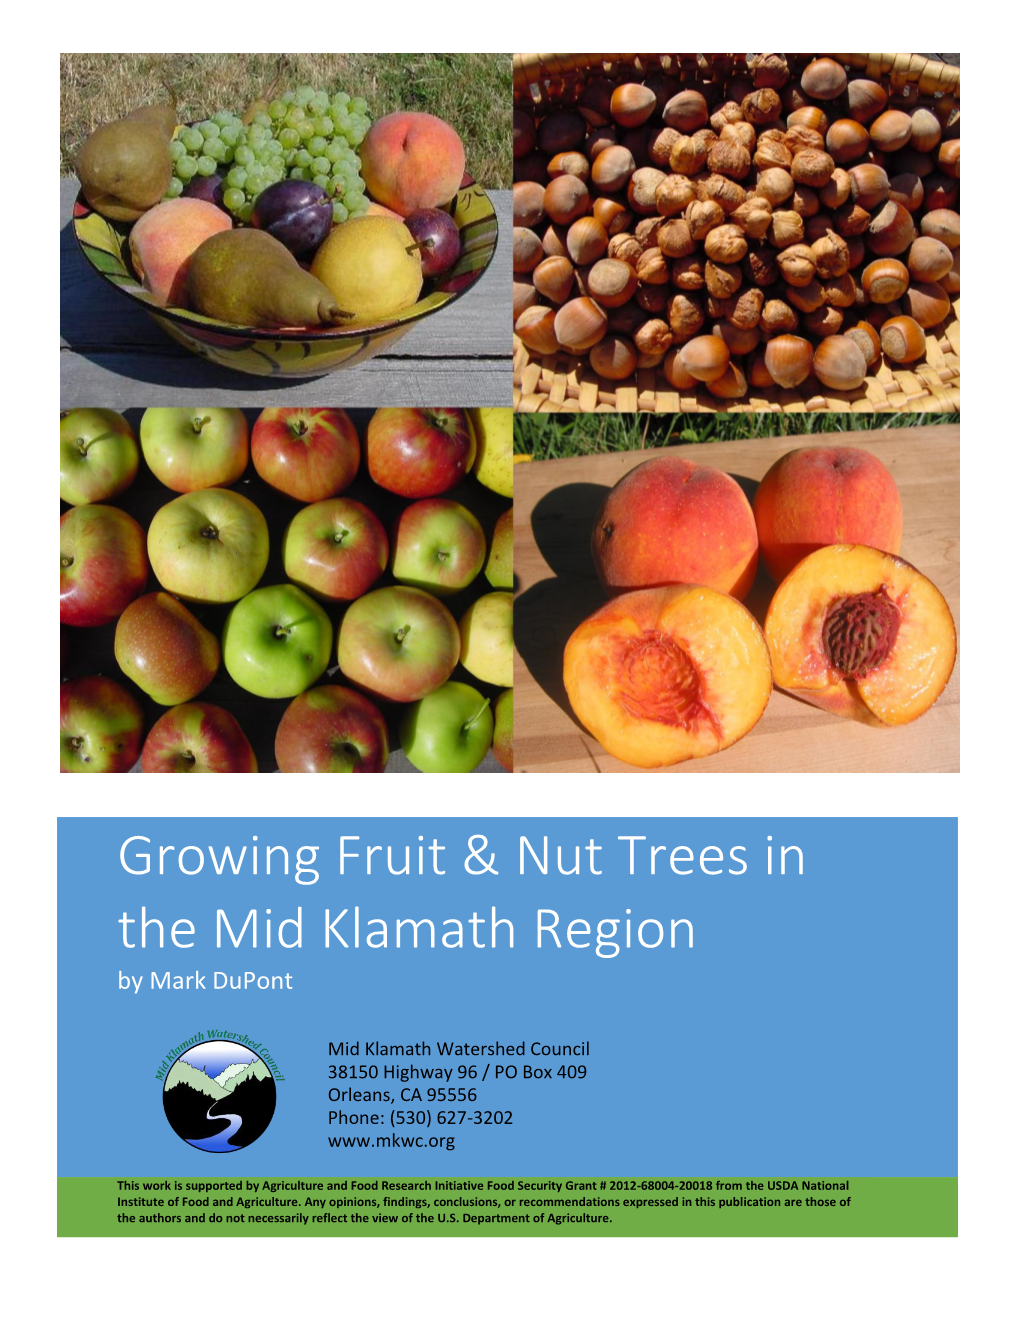 Growing Fruit & Nut Trees in the Mid Klamath Region